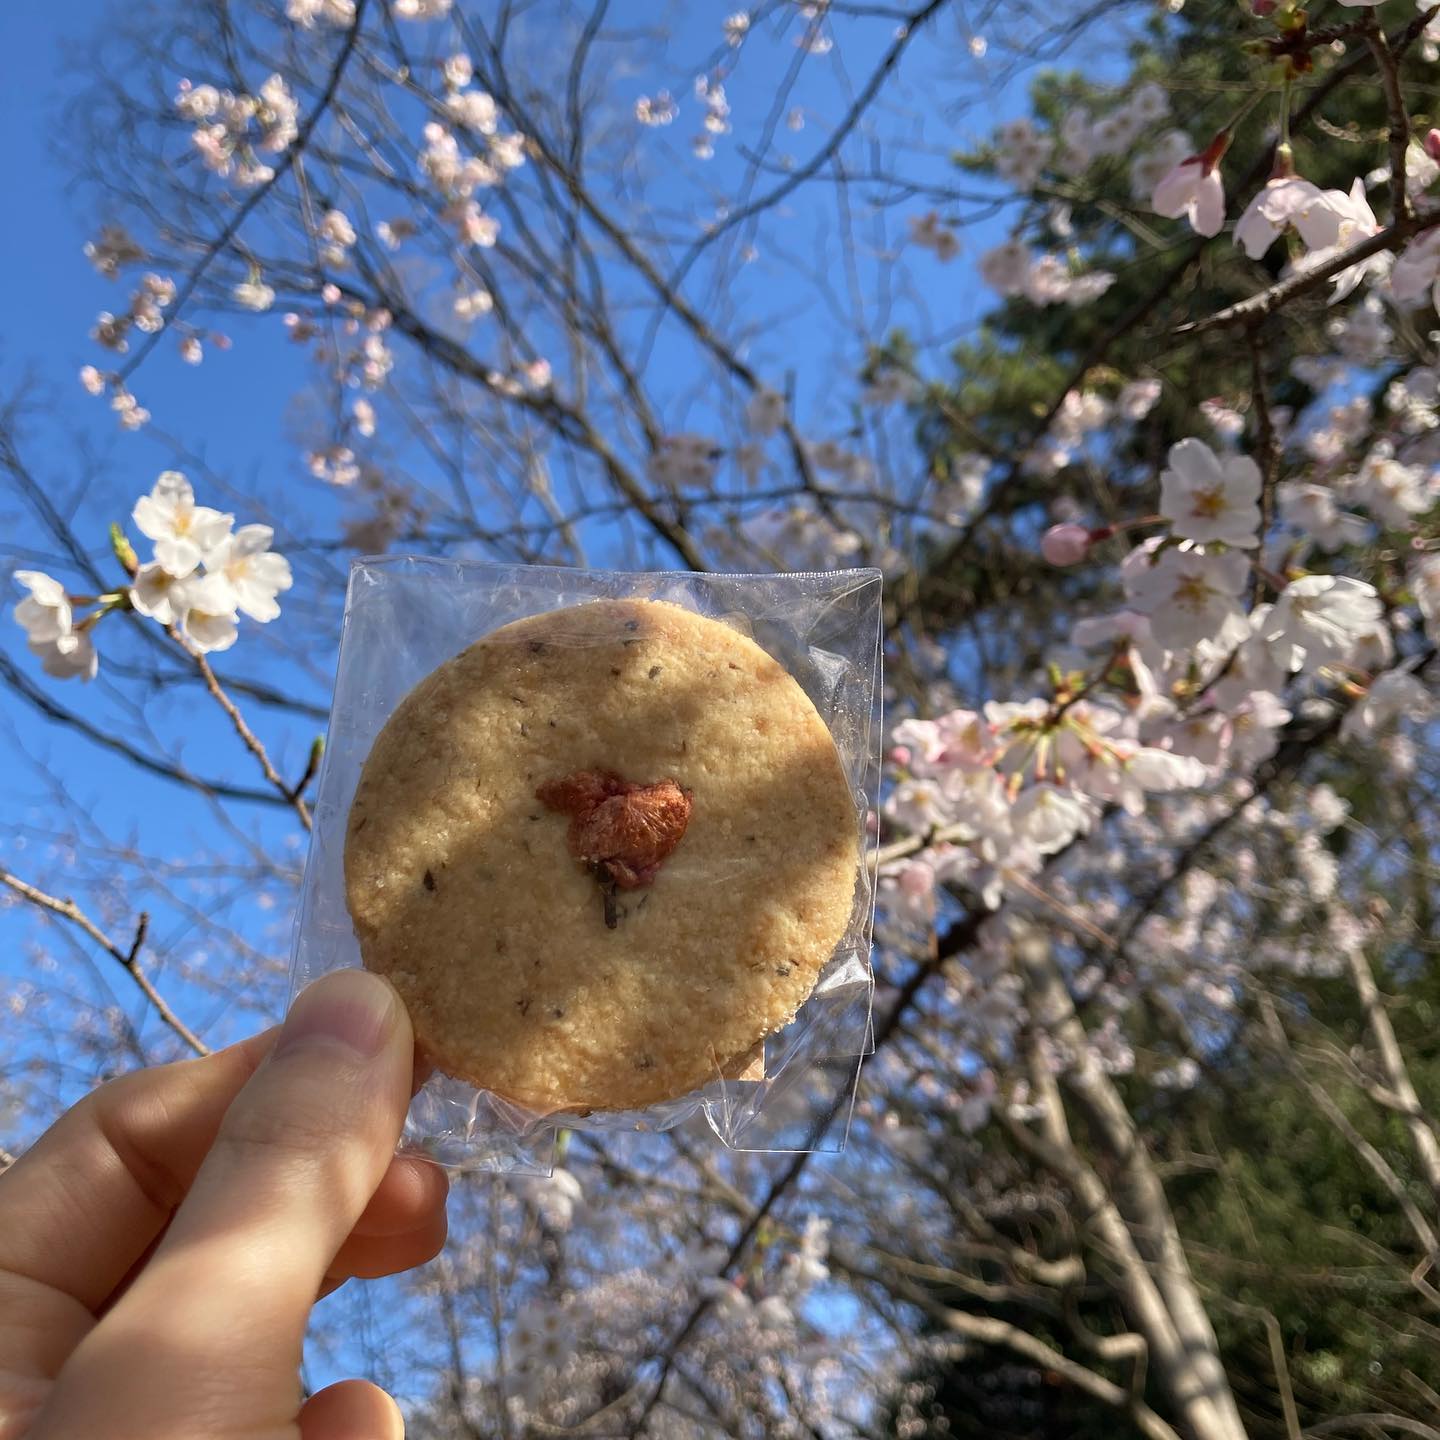 春の嵐が去ってとてもいい天気️多摩川浅間神社、多摩川台公園の桜もきれいに咲き始めました。たんぽぽやすみれもちらほら。来週が満開かなというところですが、今日もお花見日和ですよ写真は桜と昆布の塩サブレ。友人に近況をたずねたら、利尻で昆布漁をしていると。おすそわけしてもらいました️サンドイッチや桜ドリンクもご用意しておりますので、お立ち寄りください。